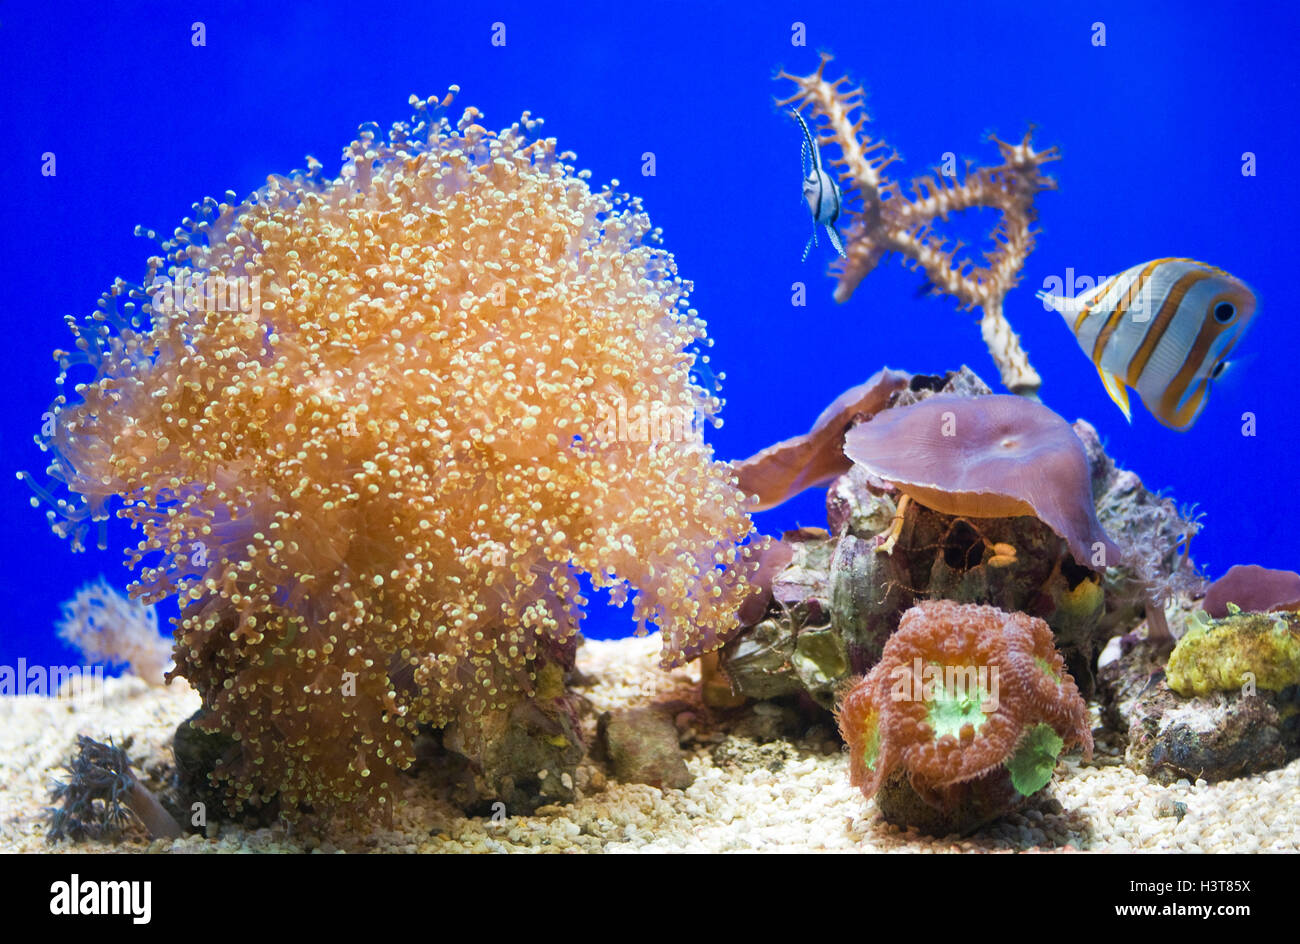 Sea Anemone in the aquarium Stock Photo